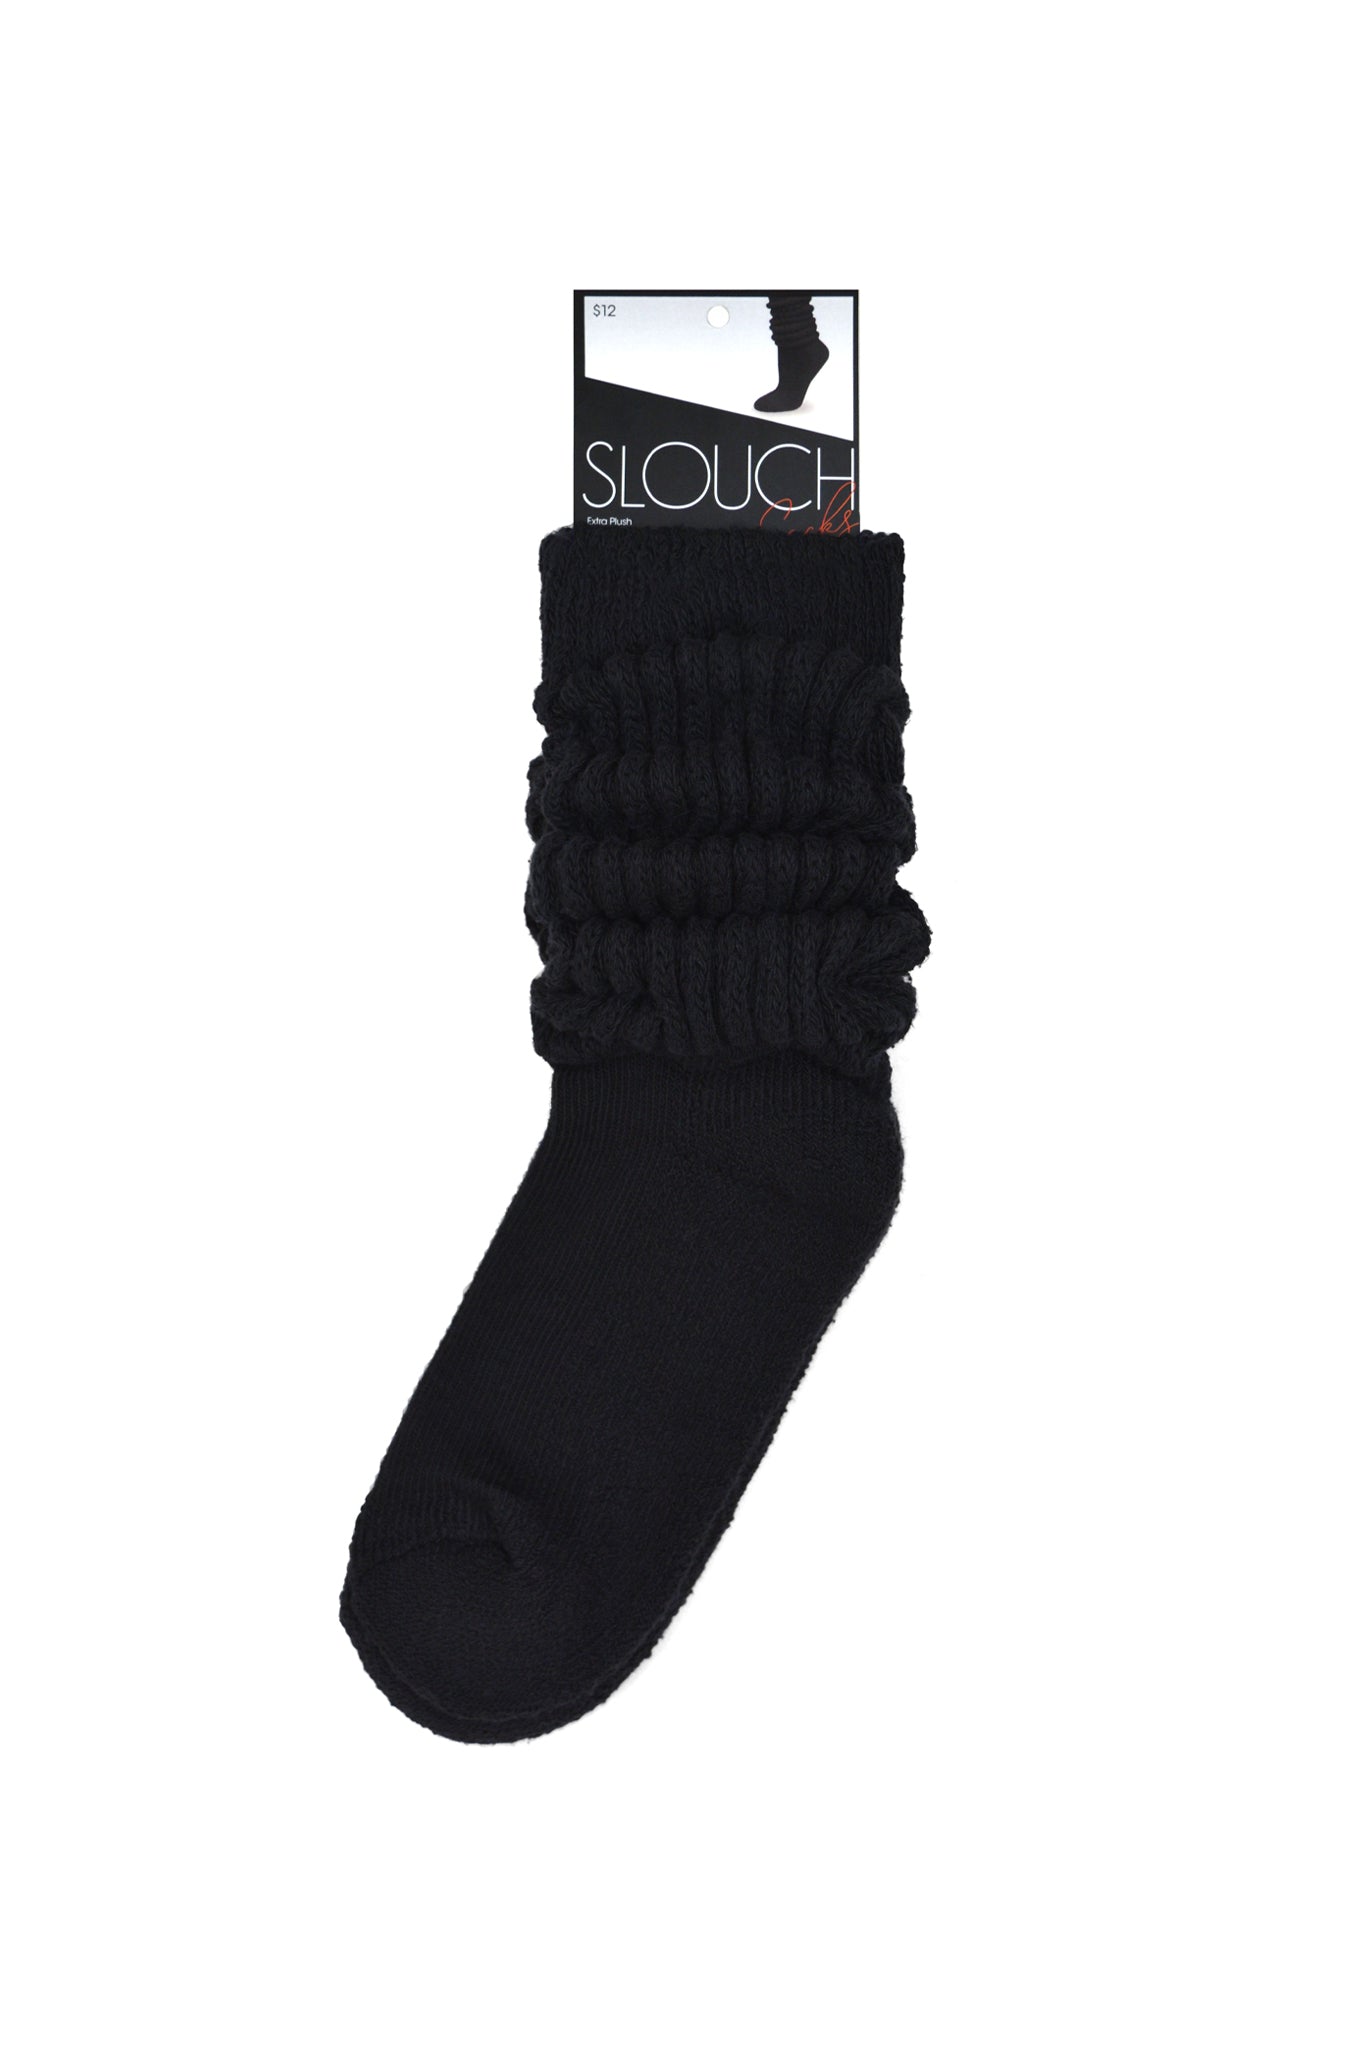 Plush Slouch Socks, Black